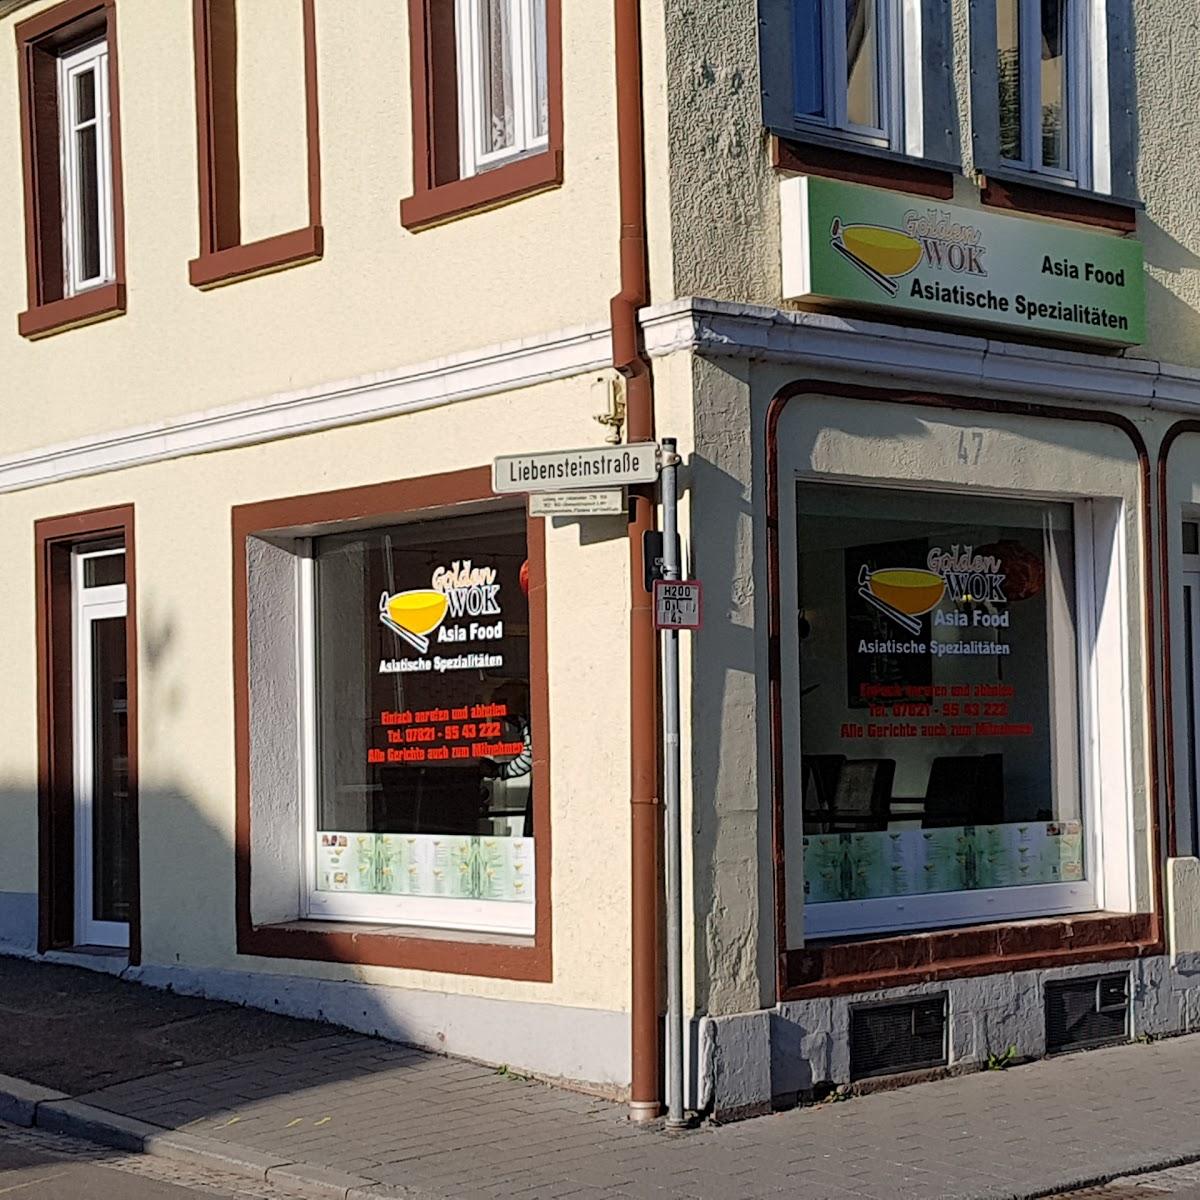 Restaurant "Golden Wok" in Lahr-Schwarzwald